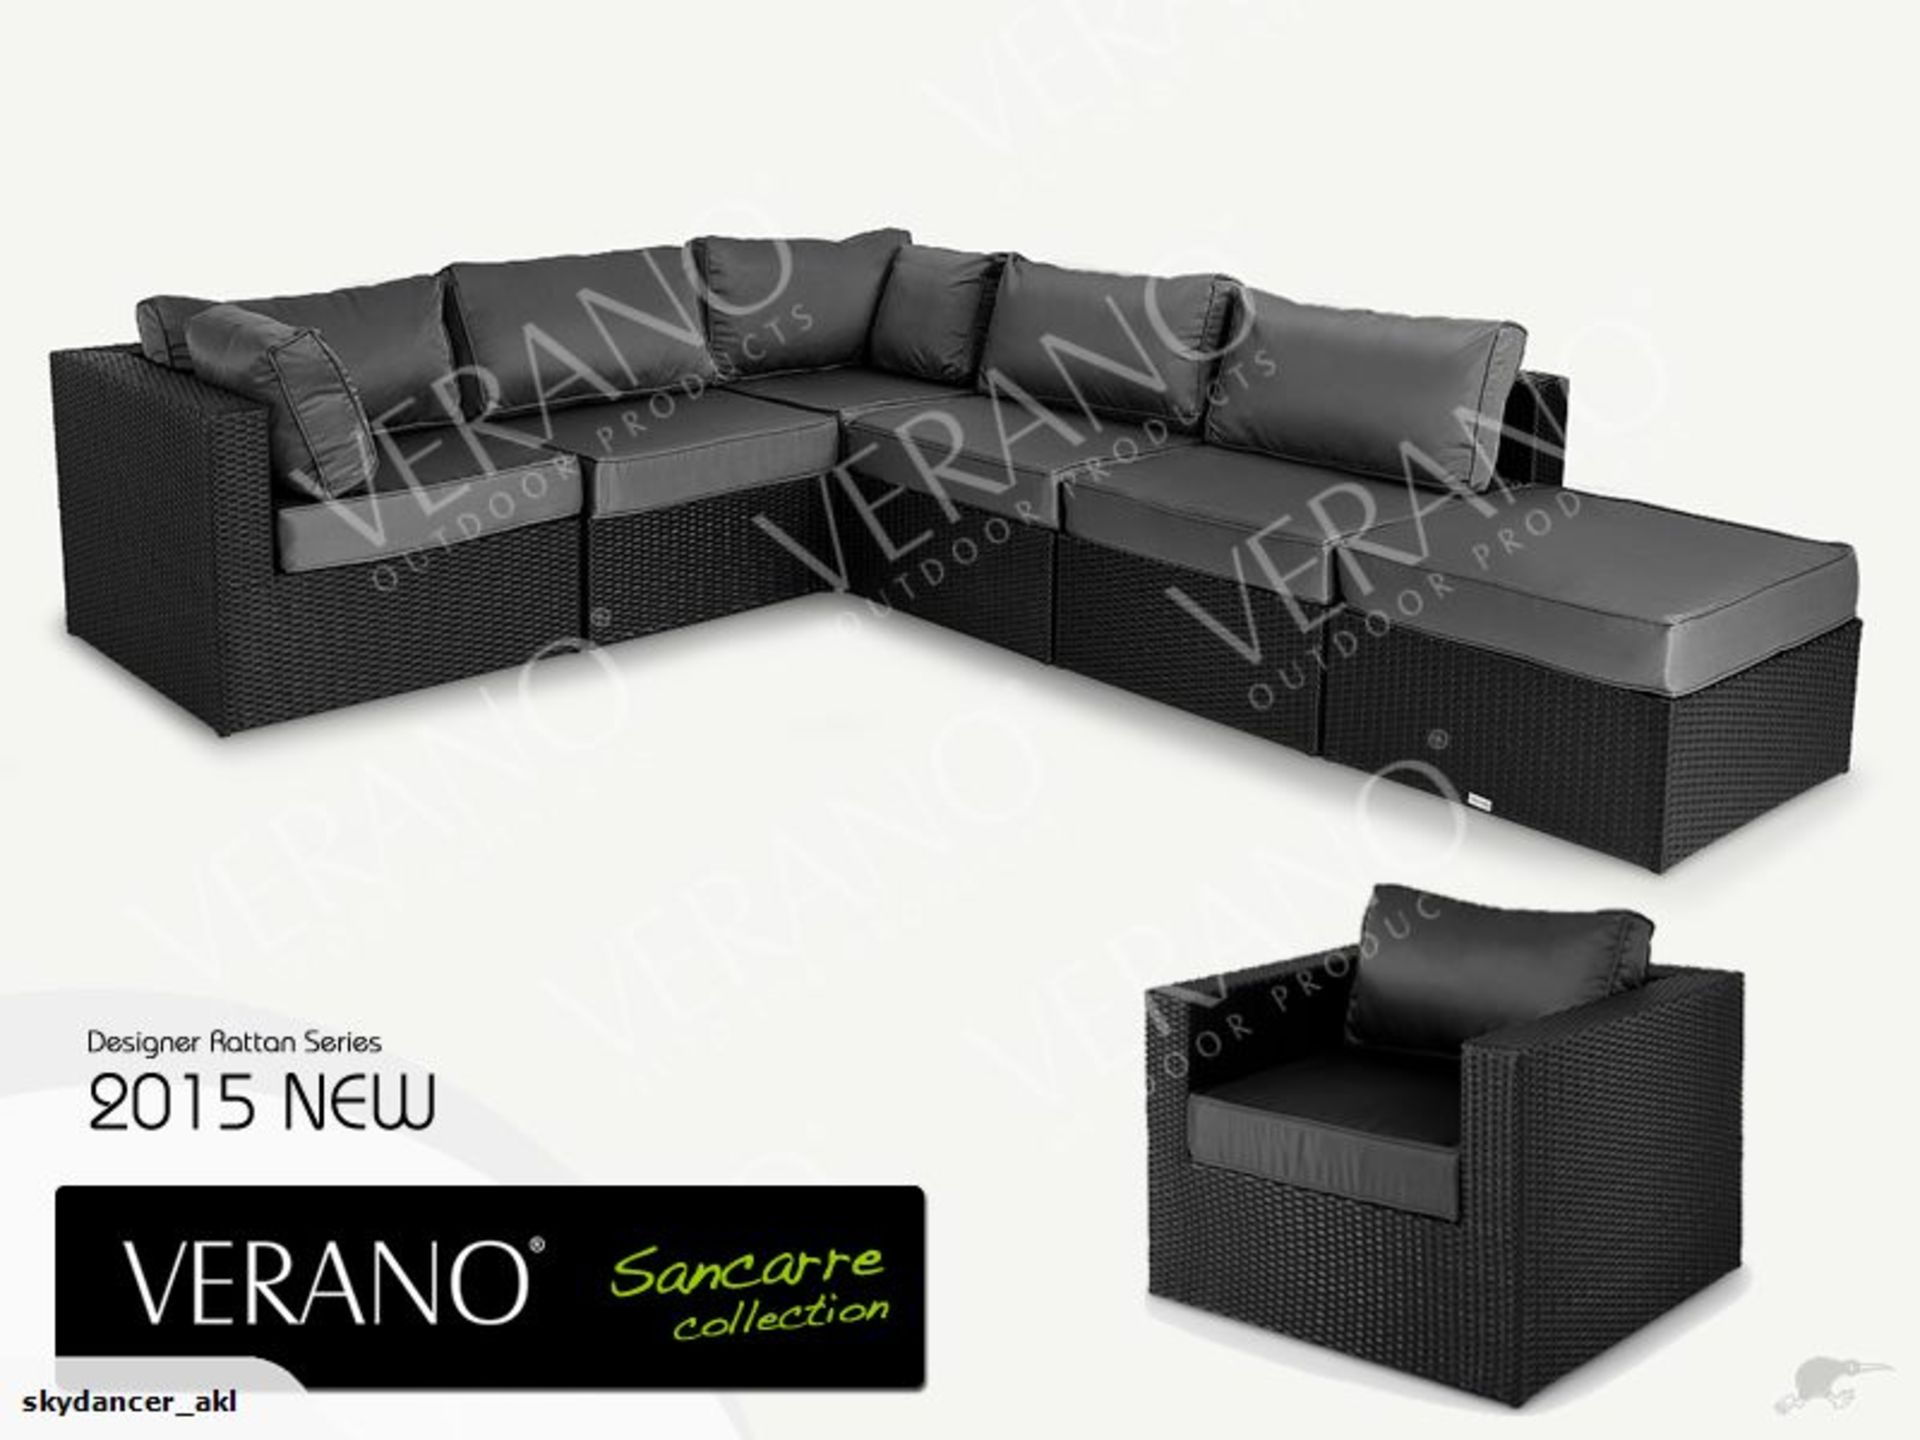 Verano® Sancerre Luxury Rattan Garden Furniture Outdoor Indoor Conservatory Patio Weave Wicker - Image 2 of 4